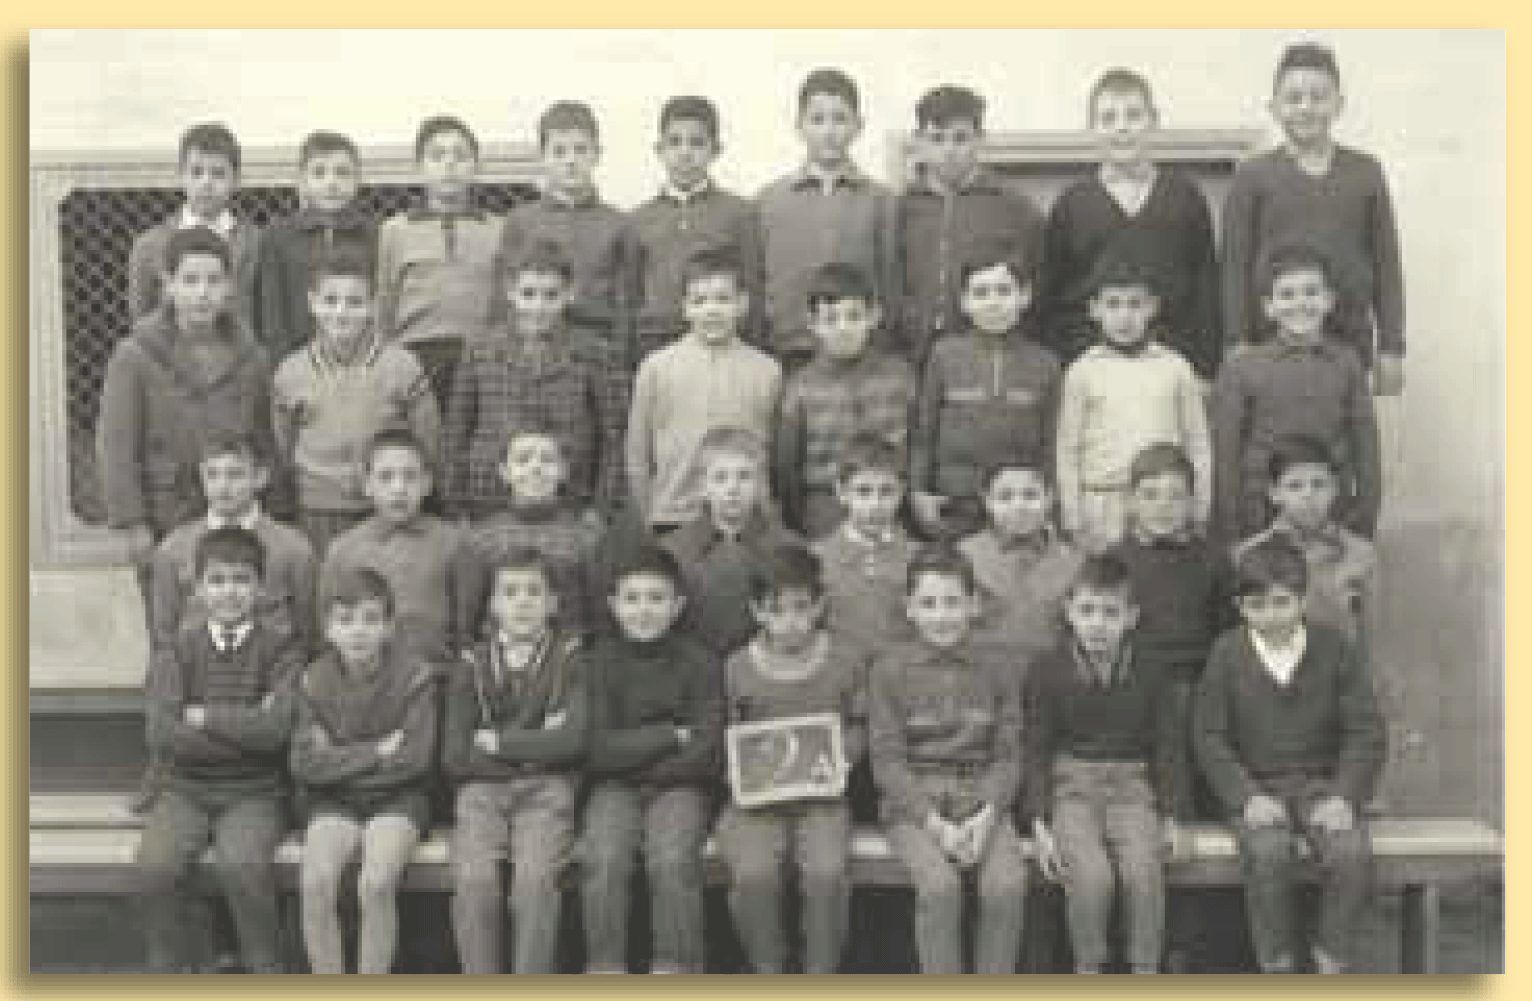 École Emerat 1959